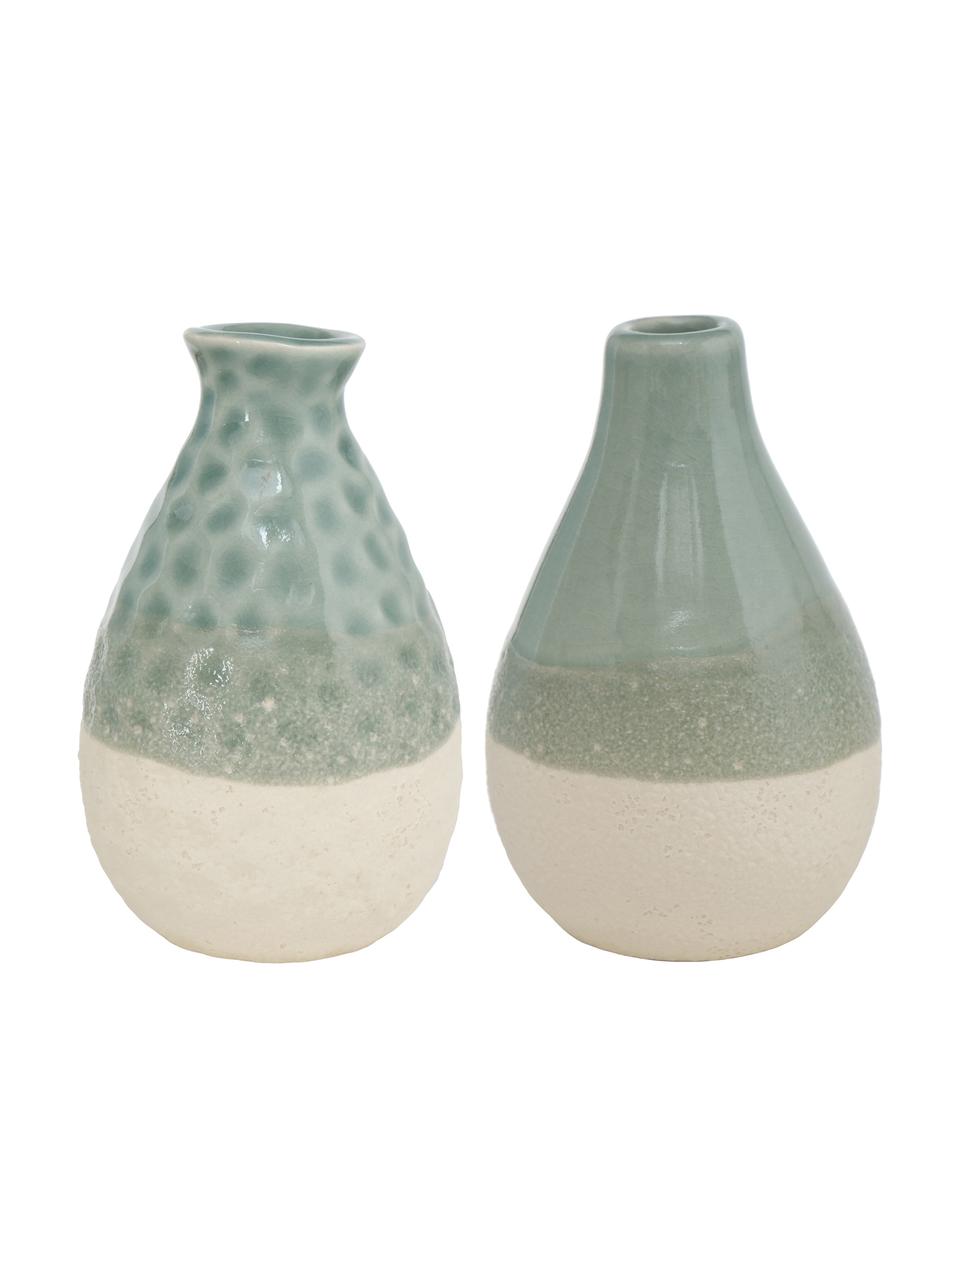 Kleines Vasen-Set Carney aus Steingut, 2-tlg., Steingut, Grün, Beige, Ø 7 x H 11 cm